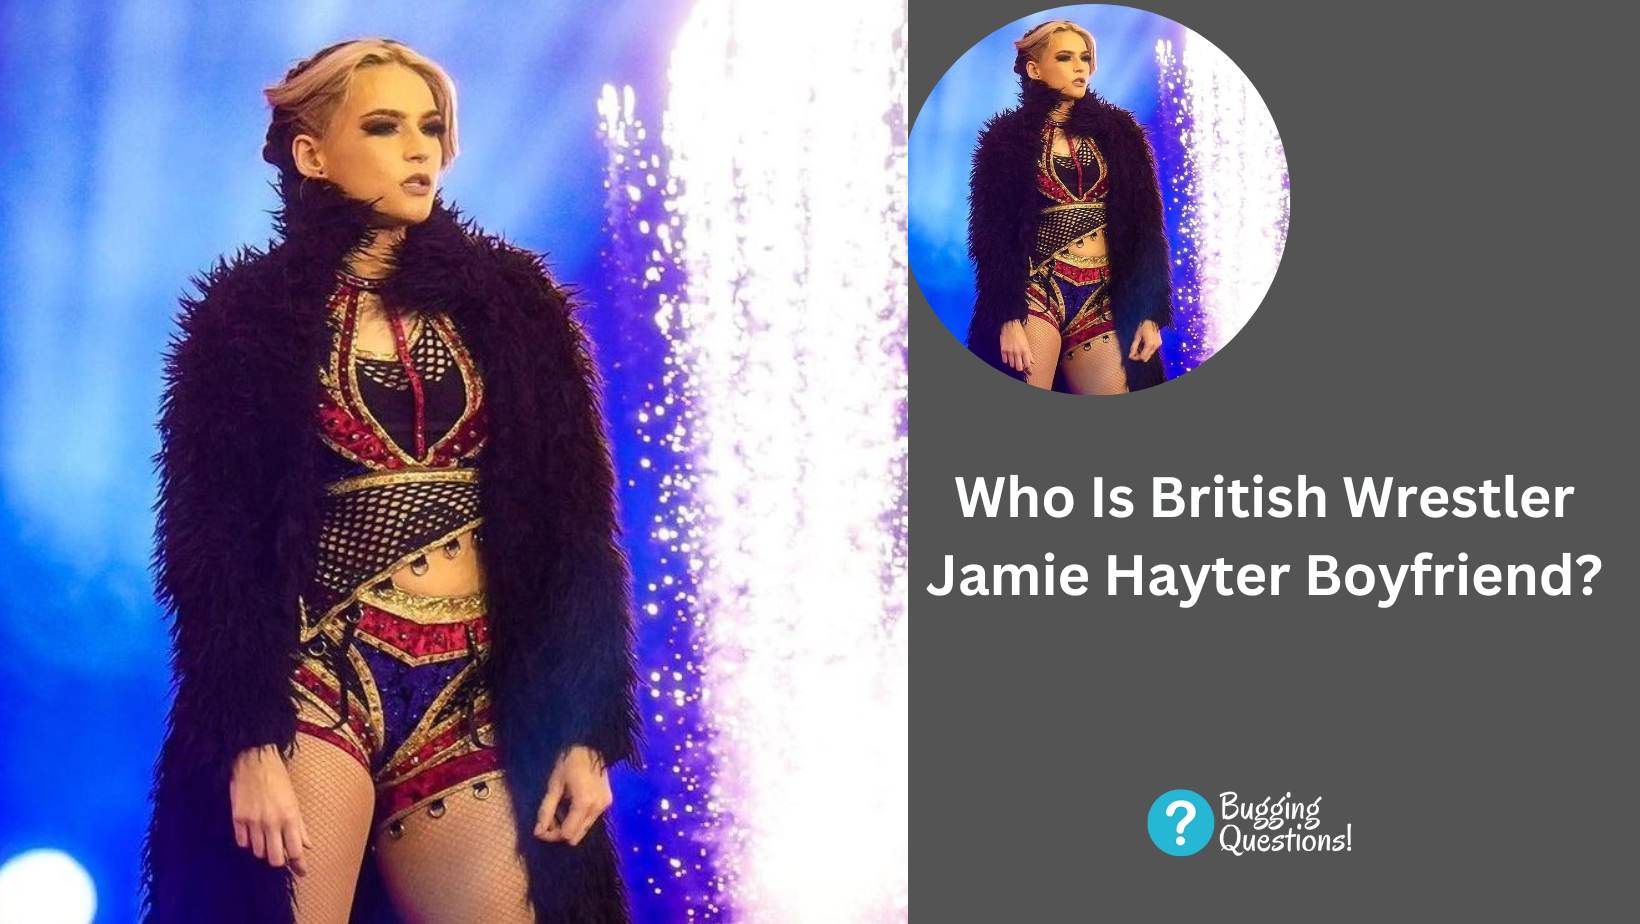 Who Is British Wrestler Jamie Hayter Boyfriend?